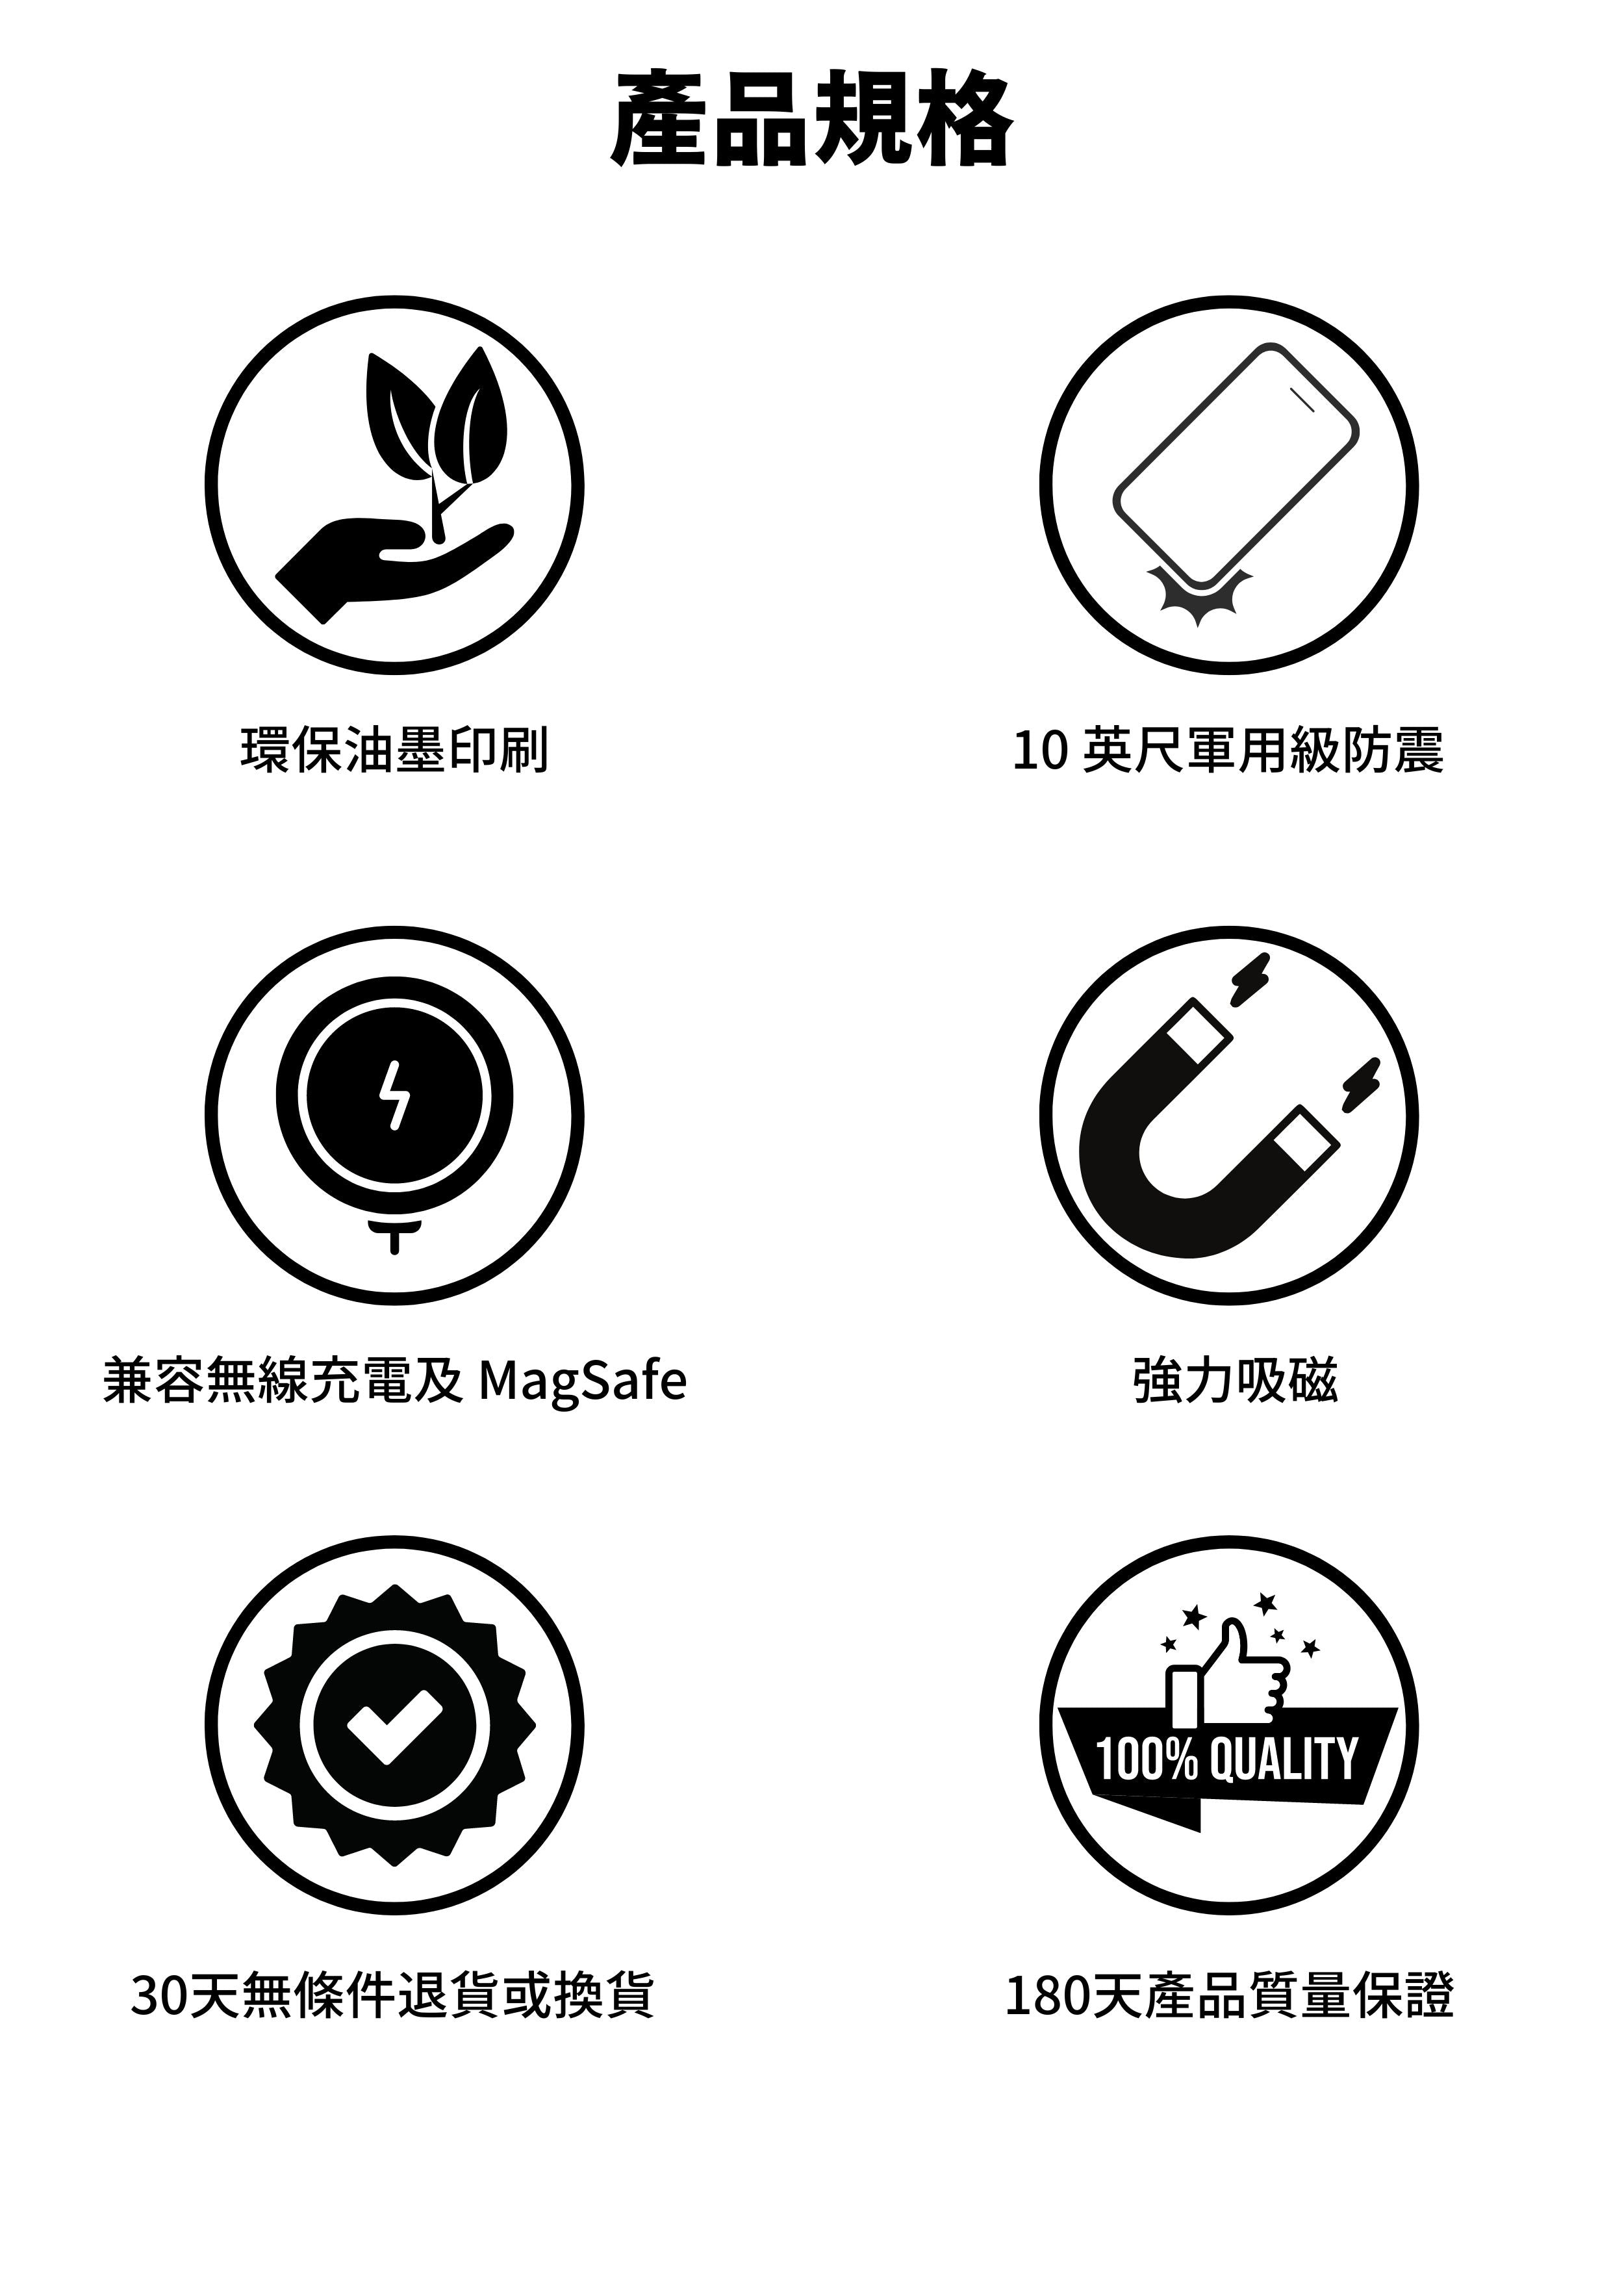 Hanogram Magsafe 兼容超強防摔保護殼產品規格